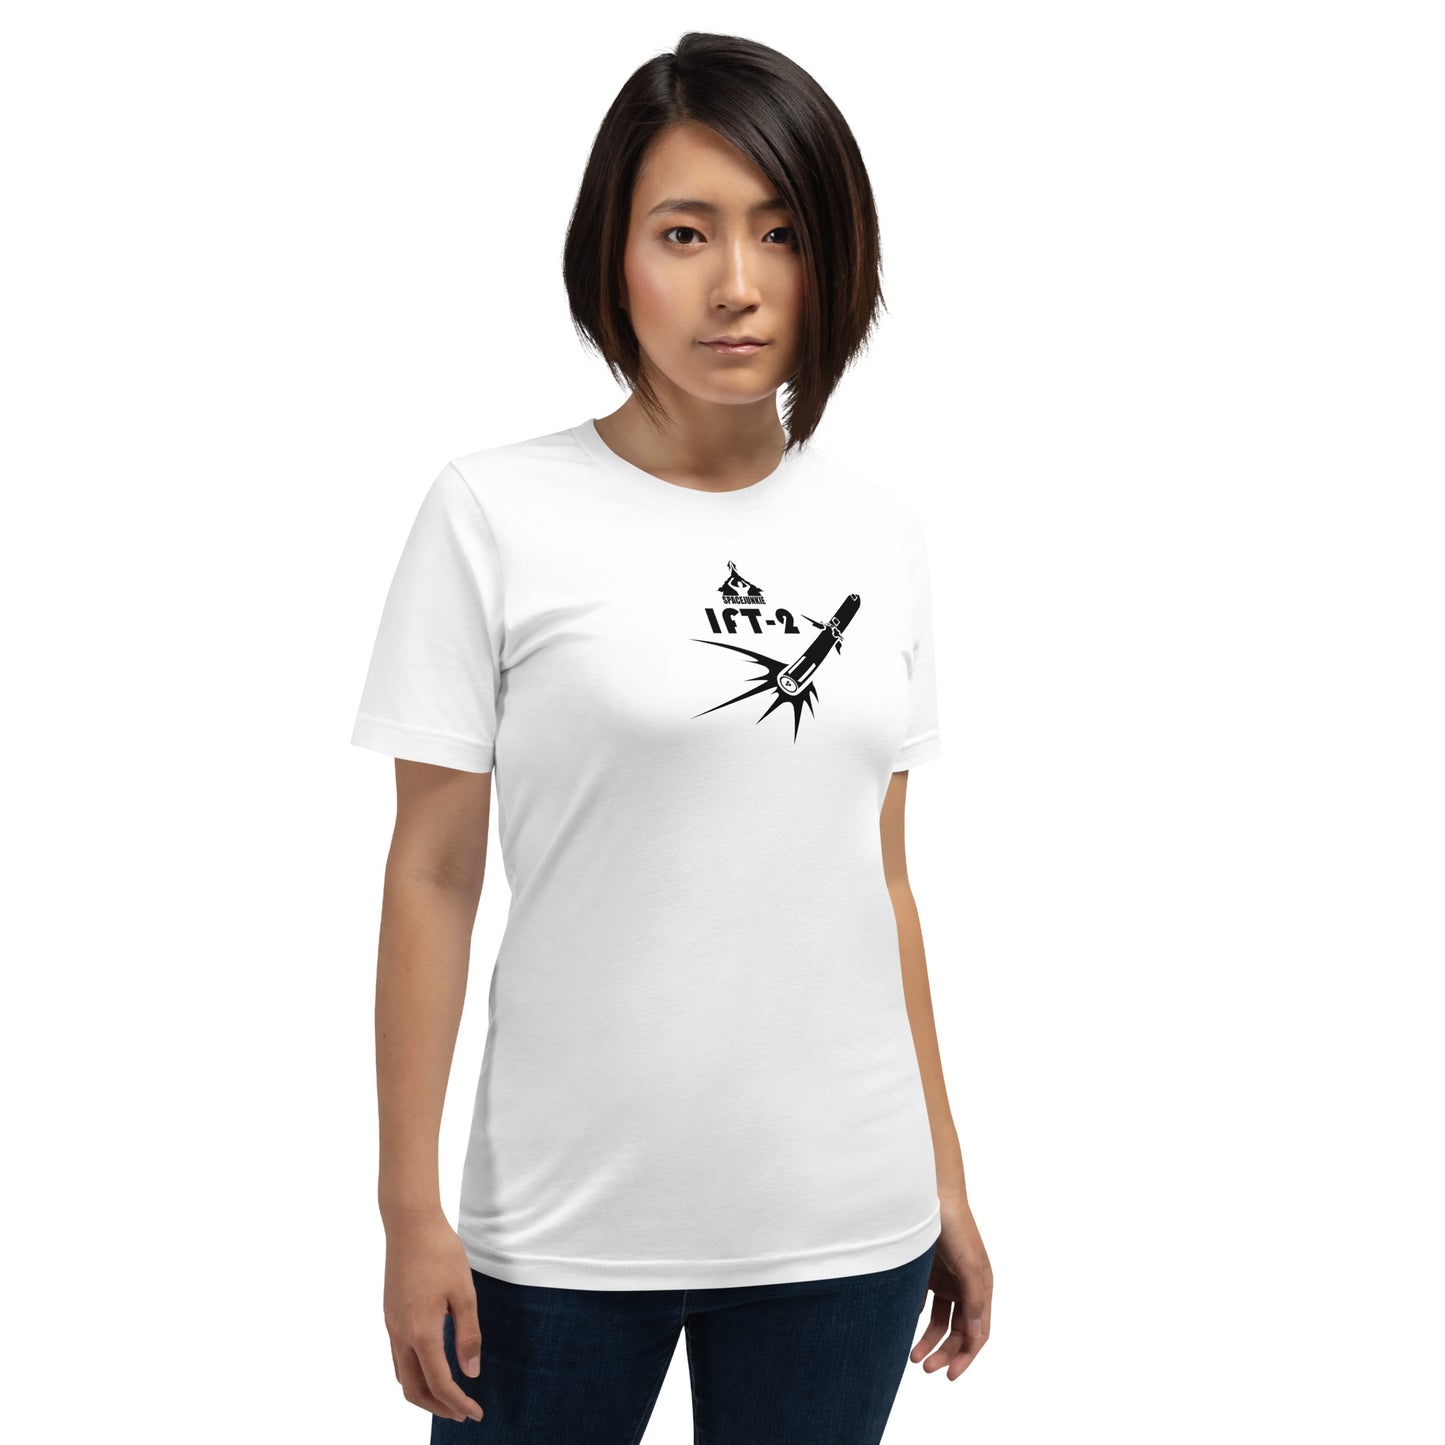 Starship IFT-2 világos női póló